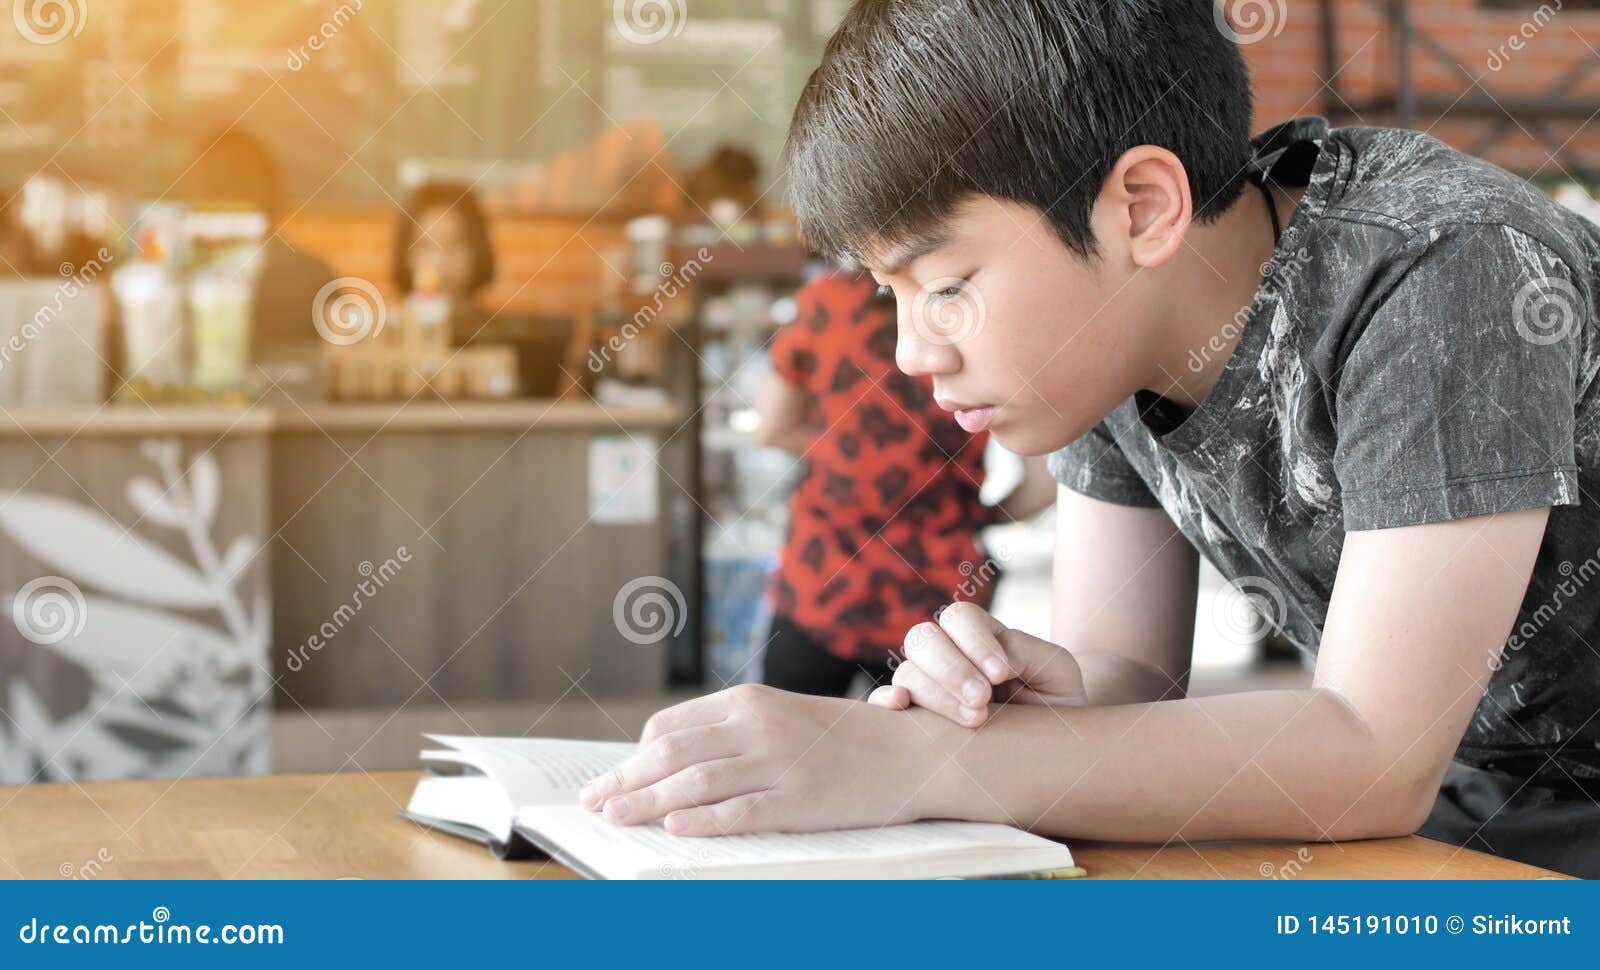 Китайский мальчик читает книгу gif. Читать мальчик 8 лет